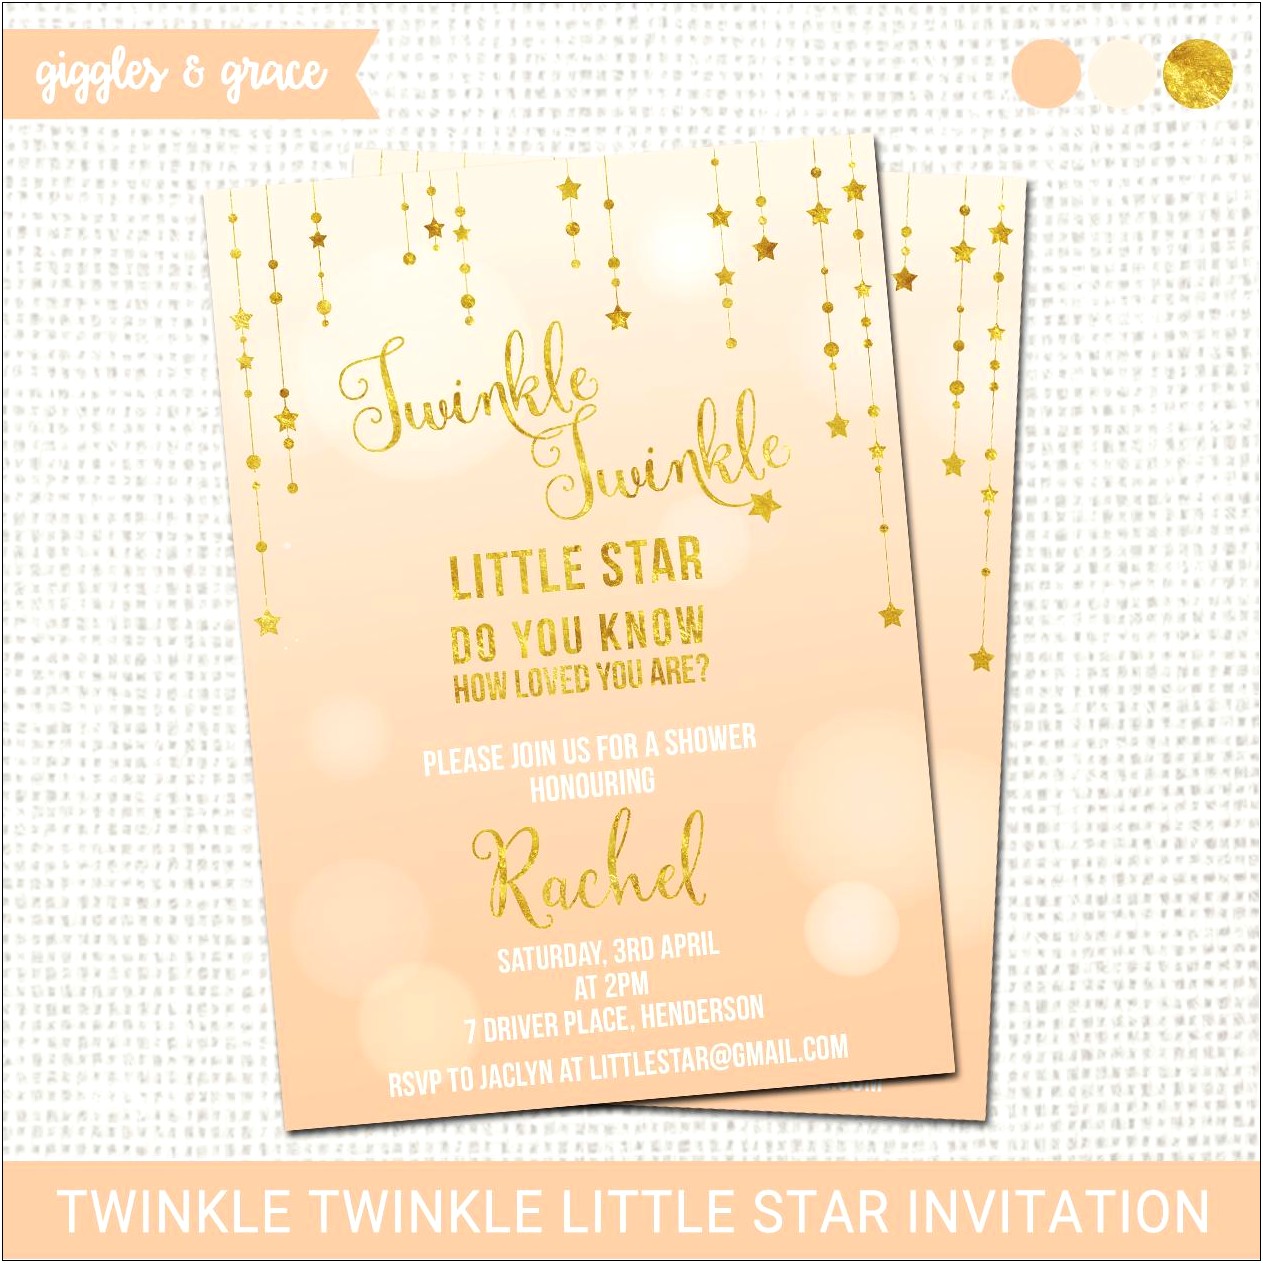 Twinkle Twinkle Little Star Invitations Template Free